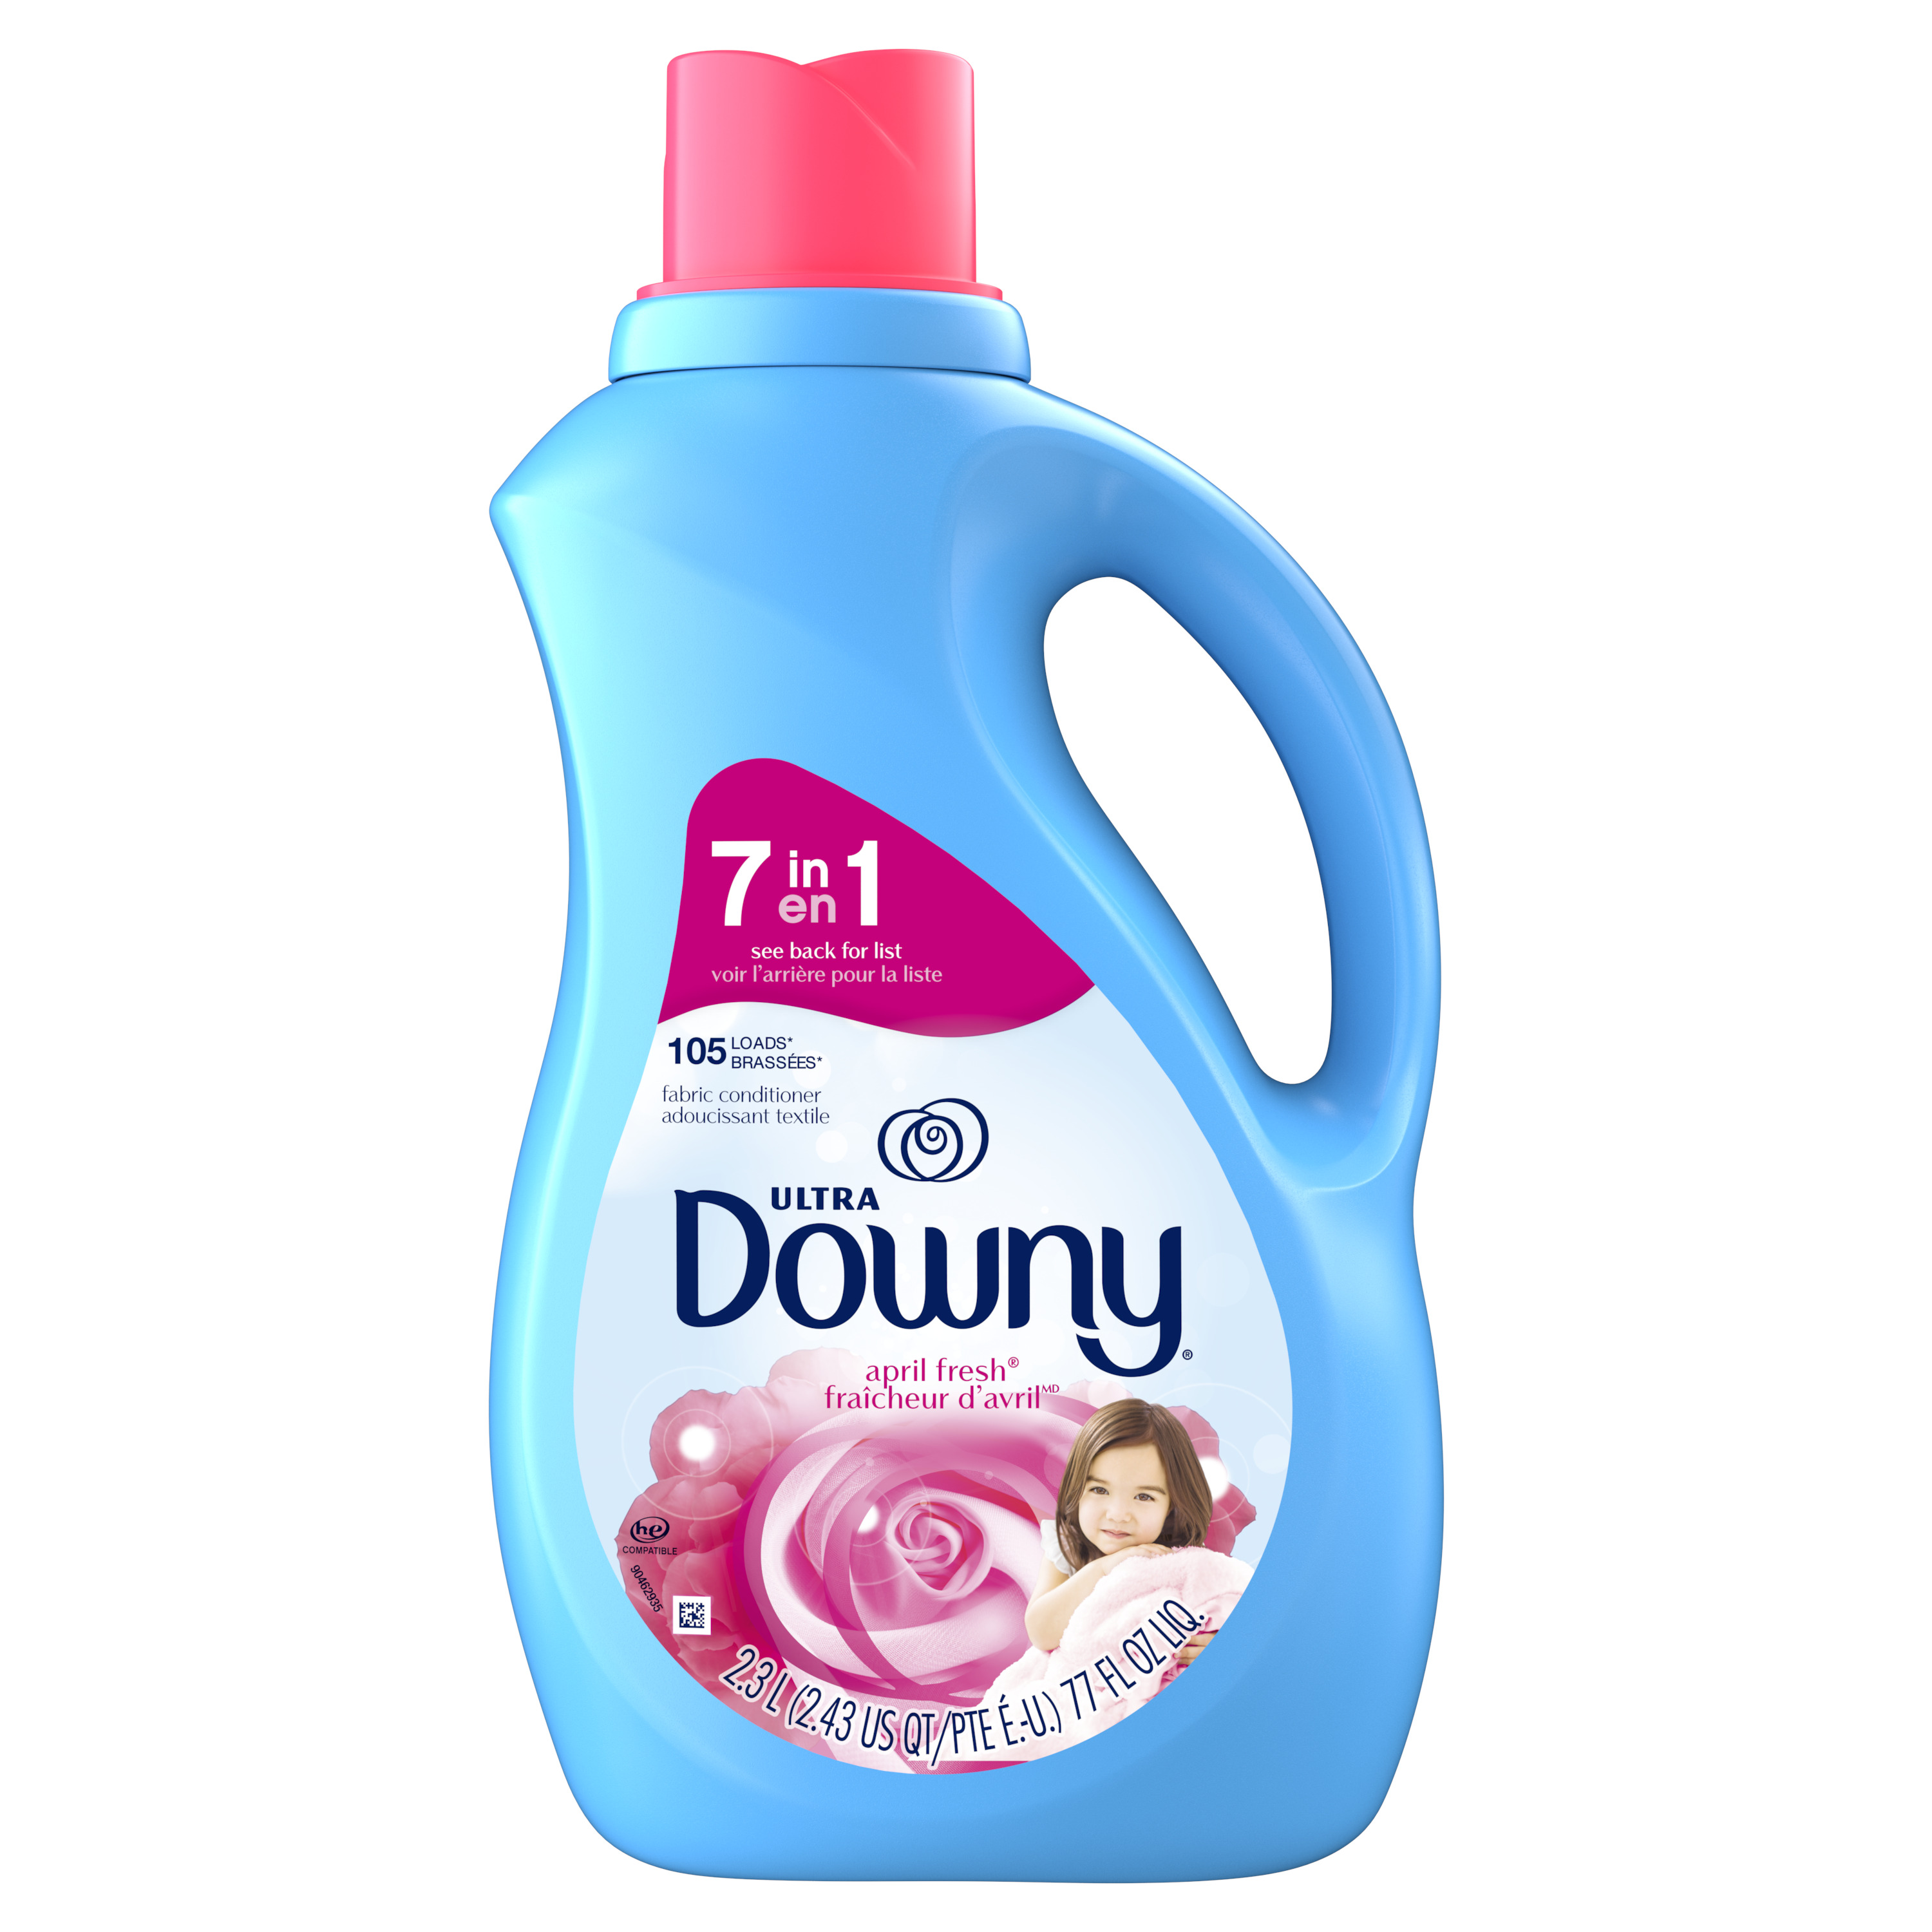 Downy Liquid Fabric Softener, April Fresh, 77 fl oz, 105 Loads - image 3 of 15